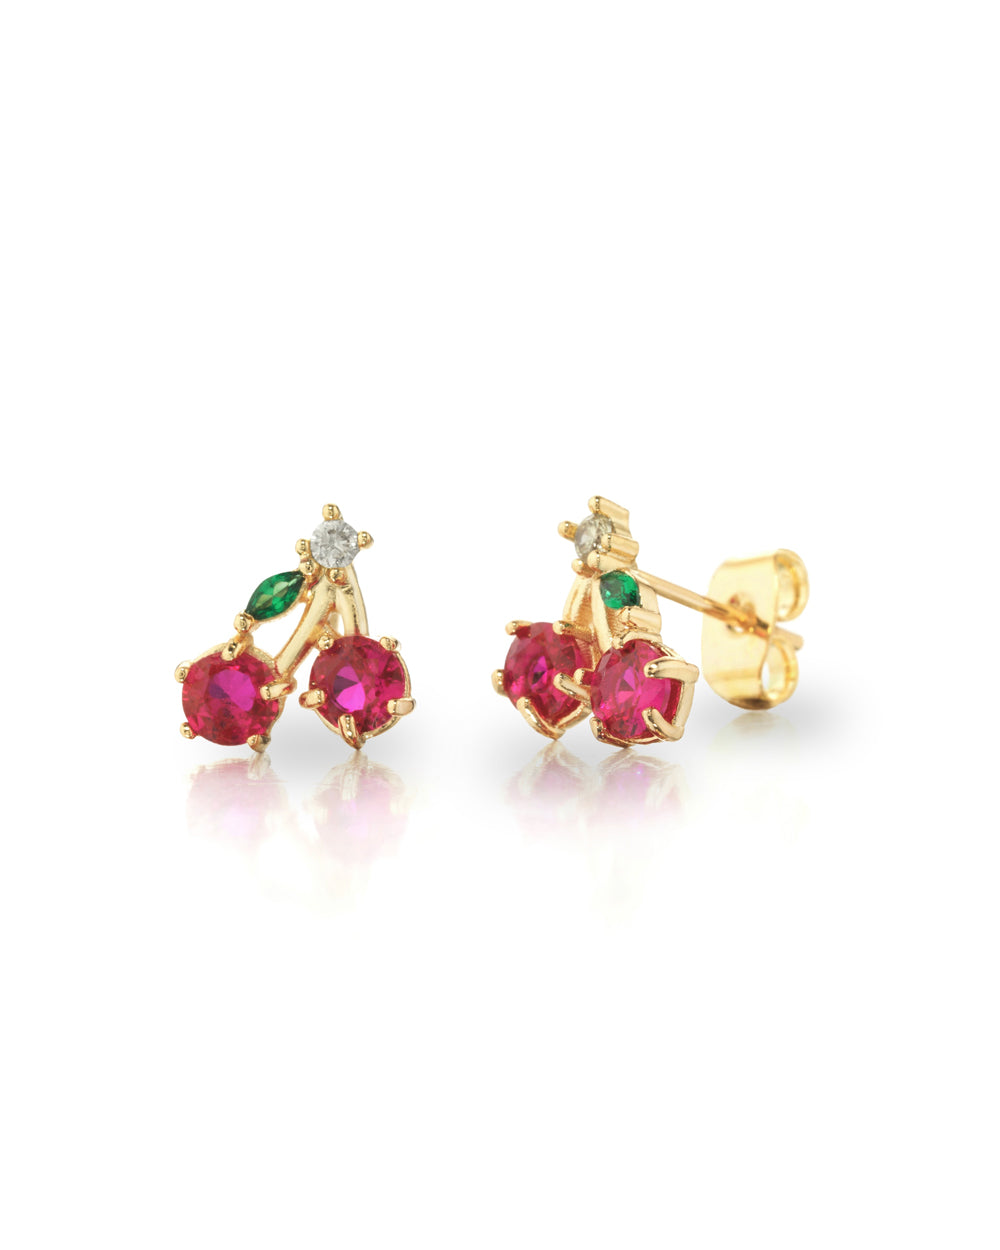 Cherry lobe earrings